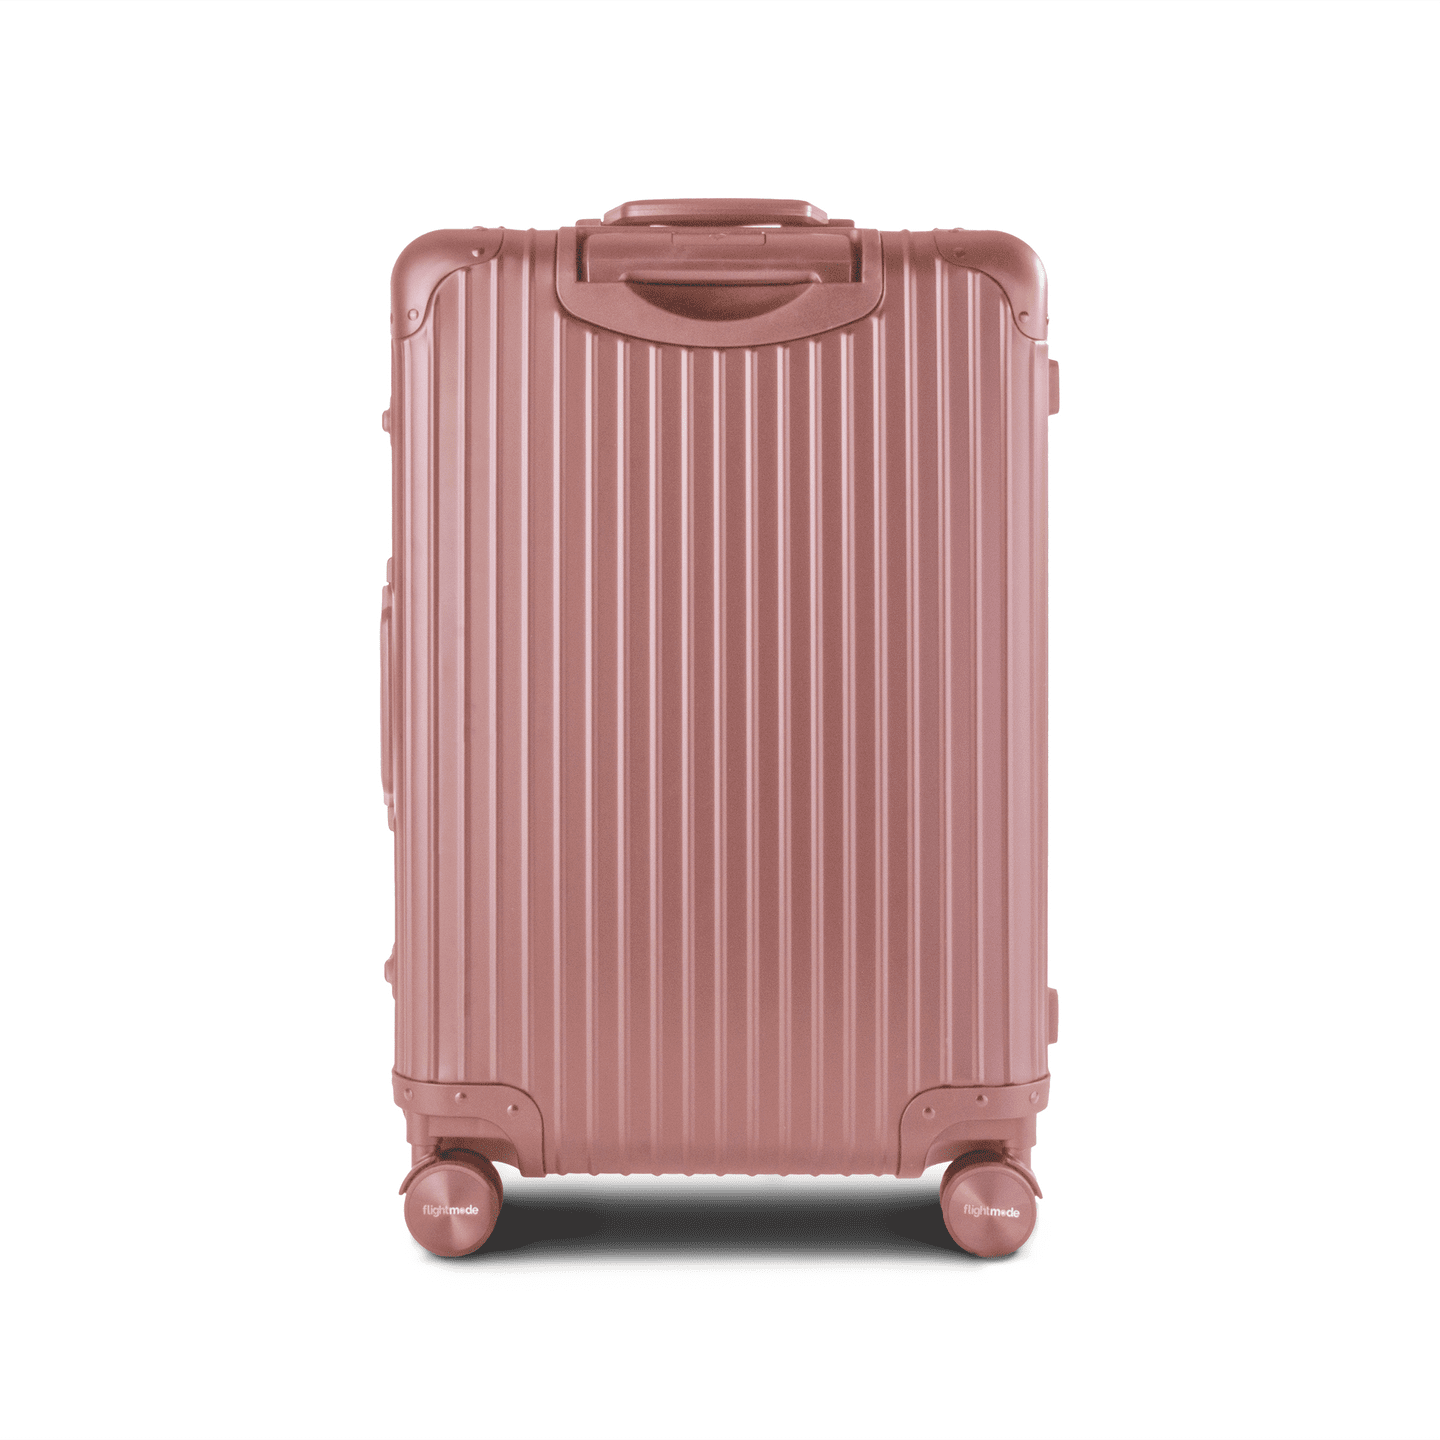 Flightmode Aluminium Luggage LARGE- Rose Gold